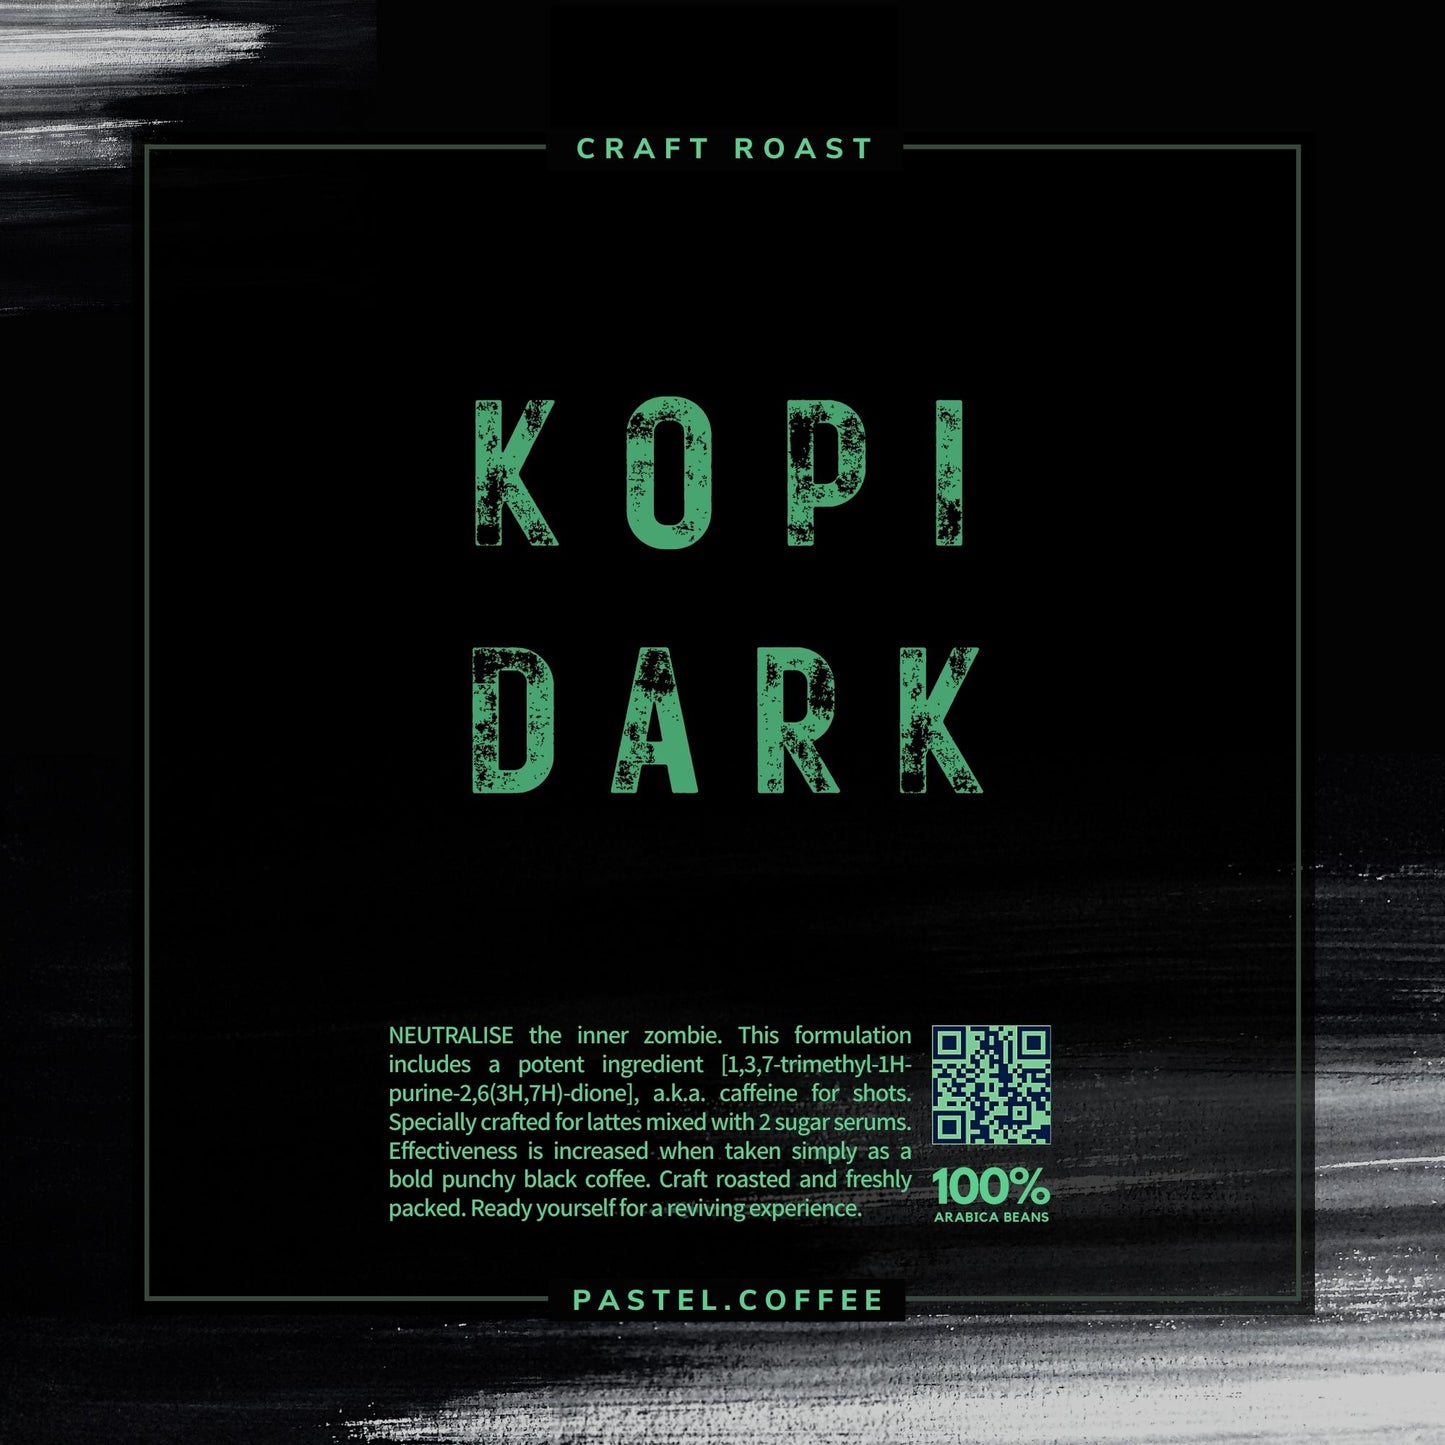 Dark Roast - Kopi Dark